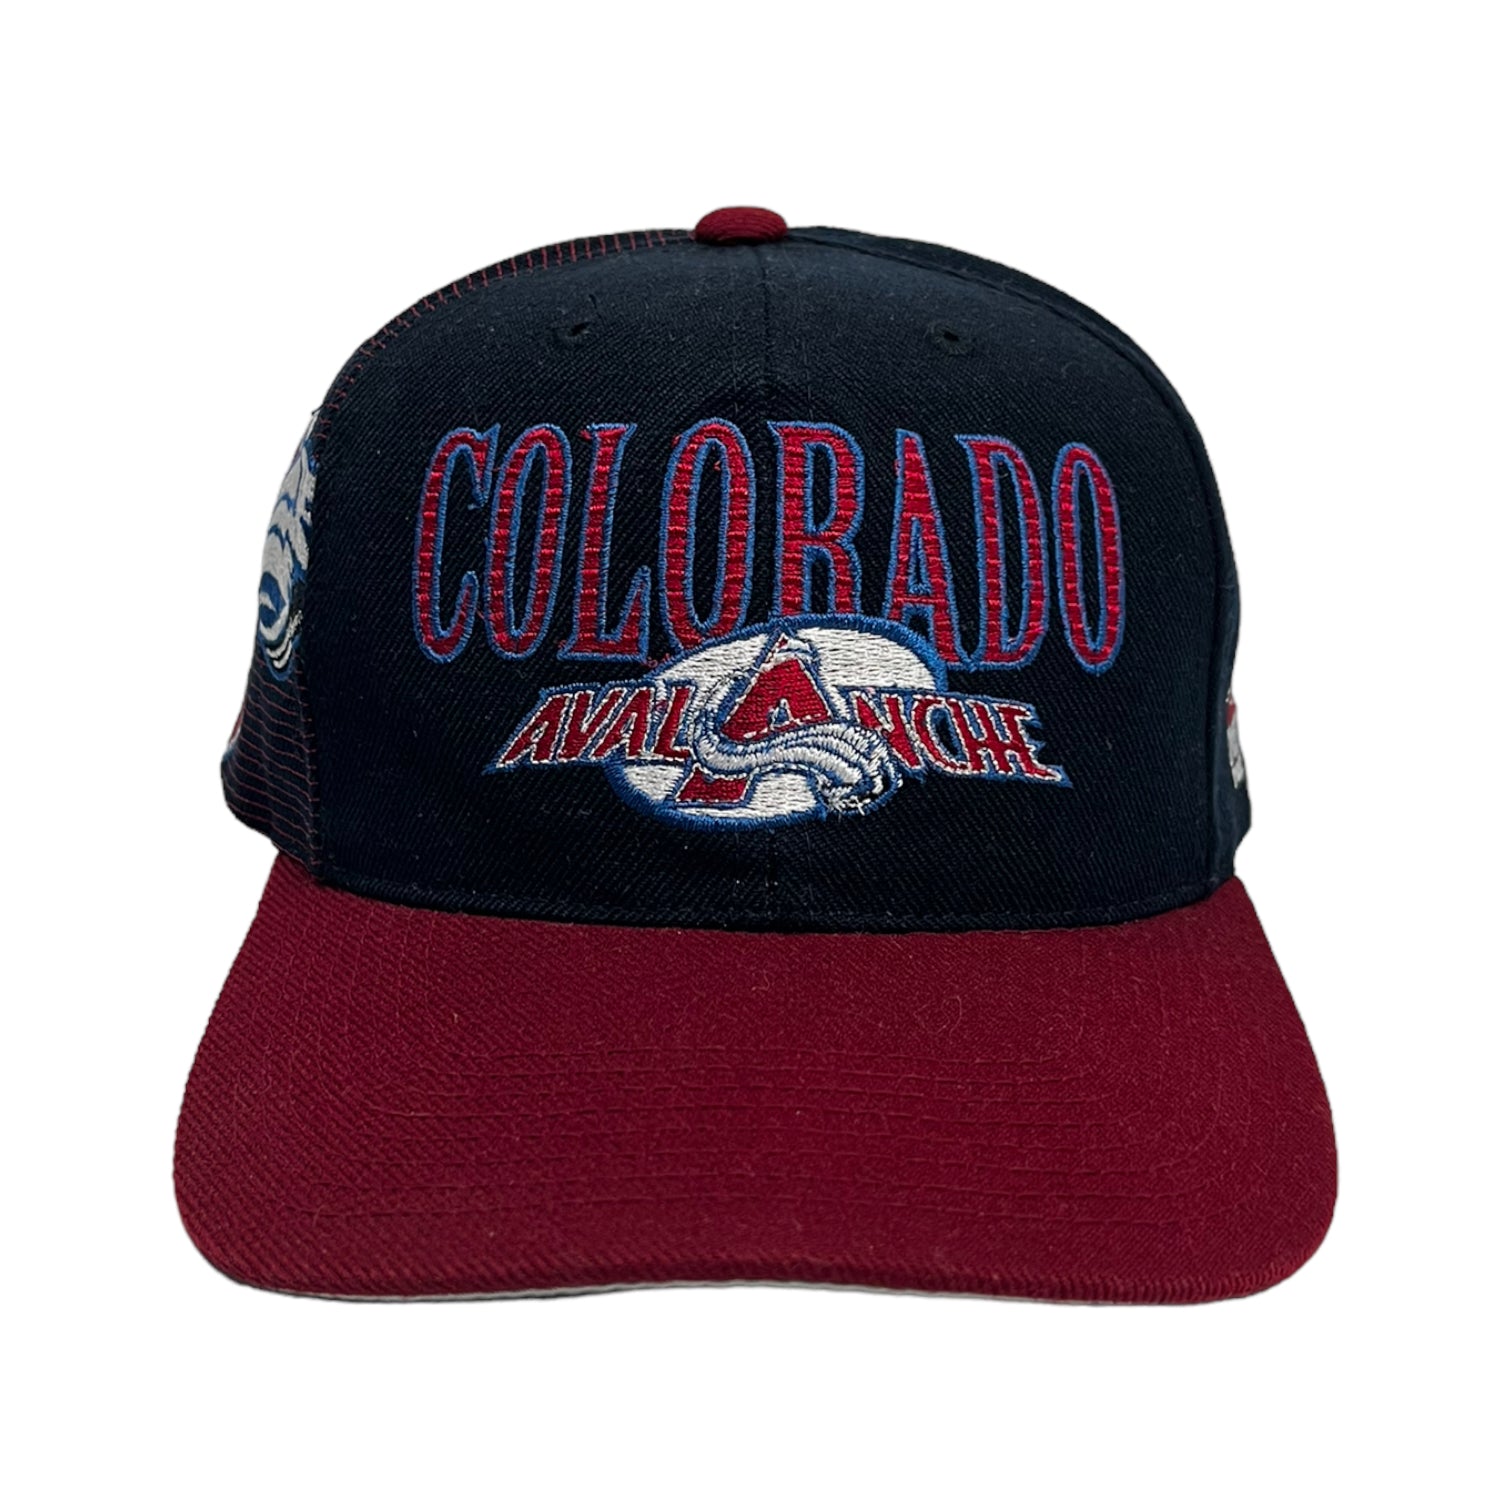 Vintage Colorado Avalanche Sports Specialties Laser Hat